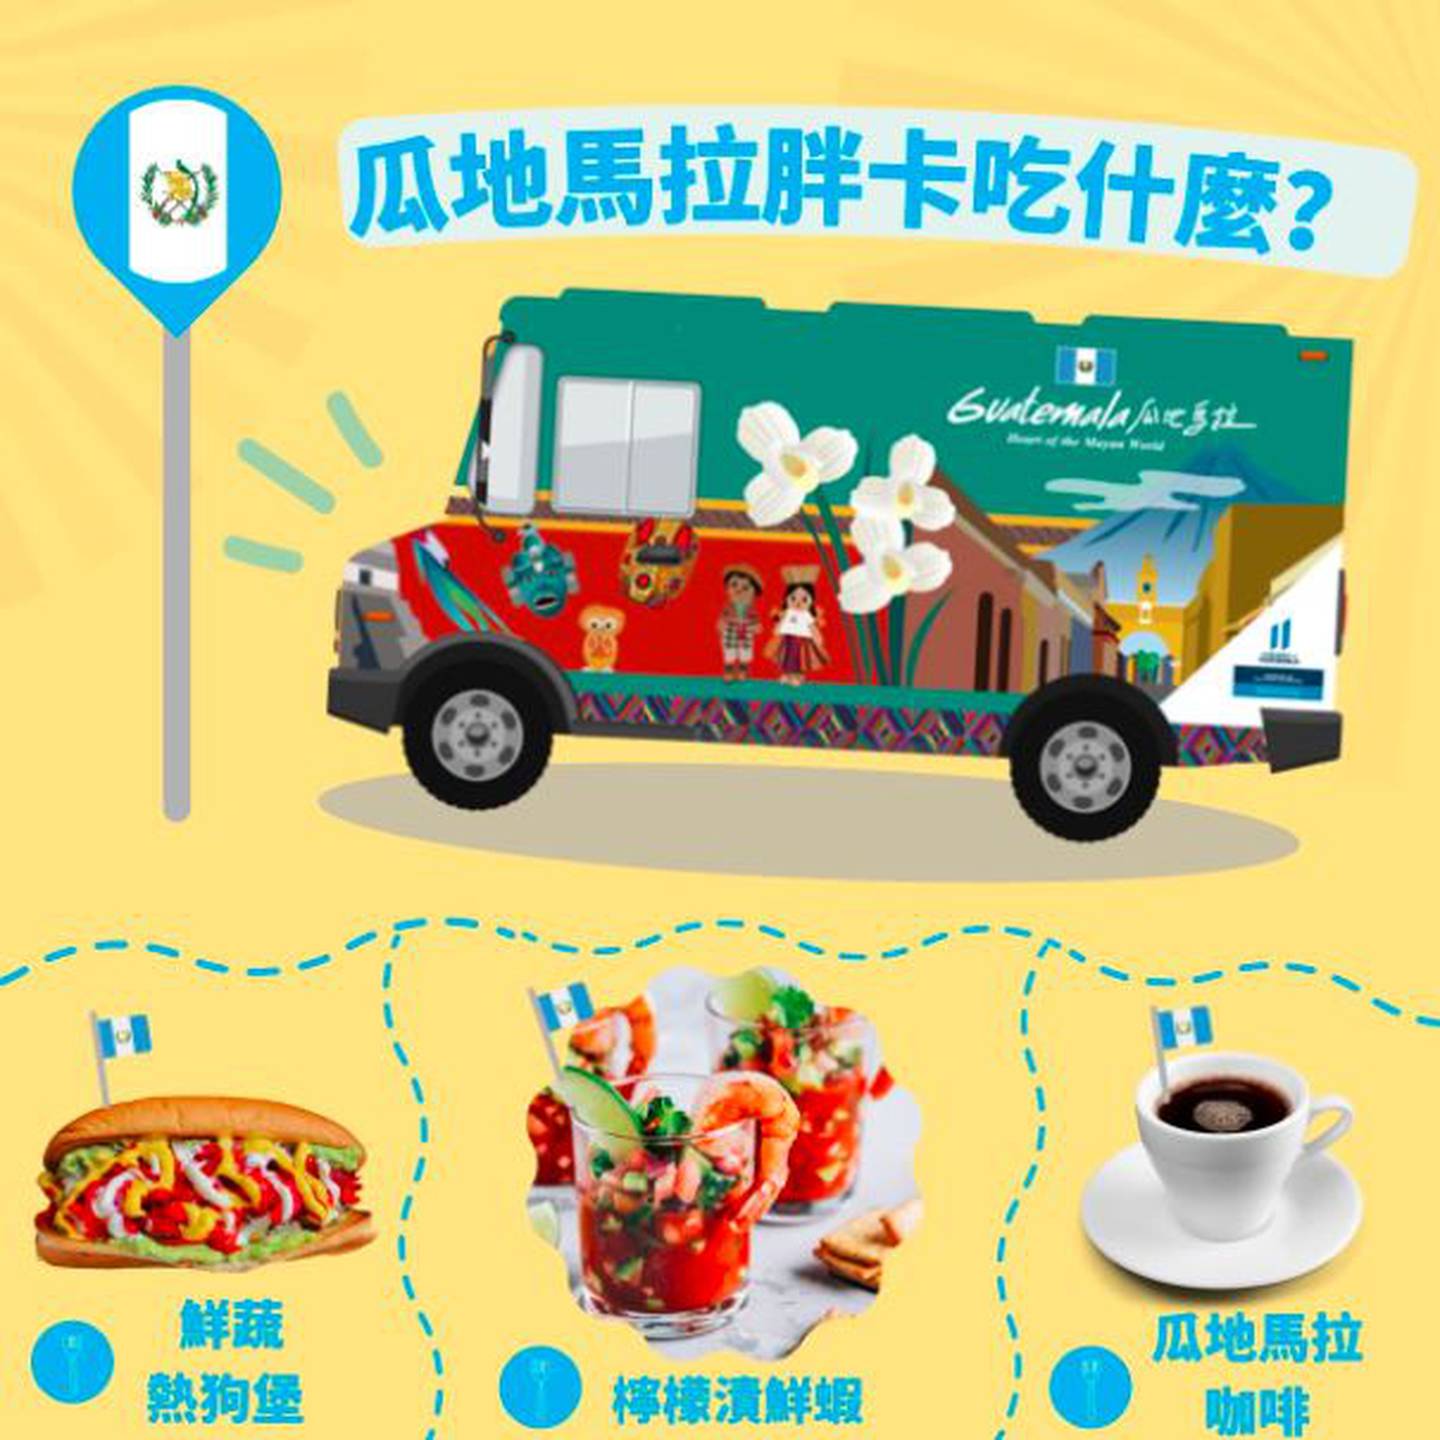 El vehículo recorrerá varios lugares representativos de Taiwán donde se ofrecen degustaciones de platillos nacionales.dfd